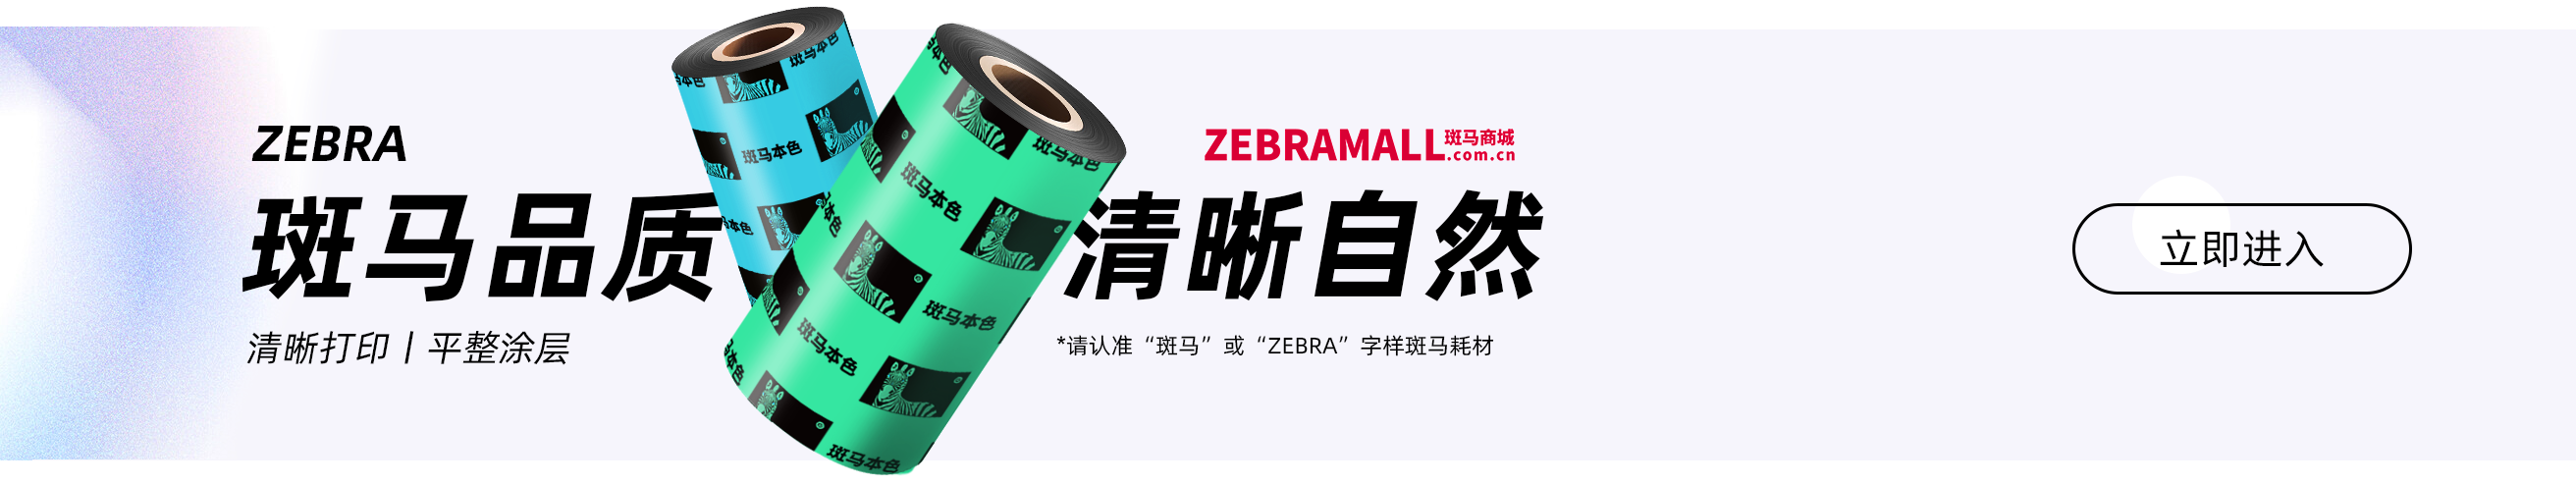 斑马商城ZEBRAMALL.COM.CN，ZEBRA斑马打印机，ZEBRA斑马碳带，ZEBRA斑马标签